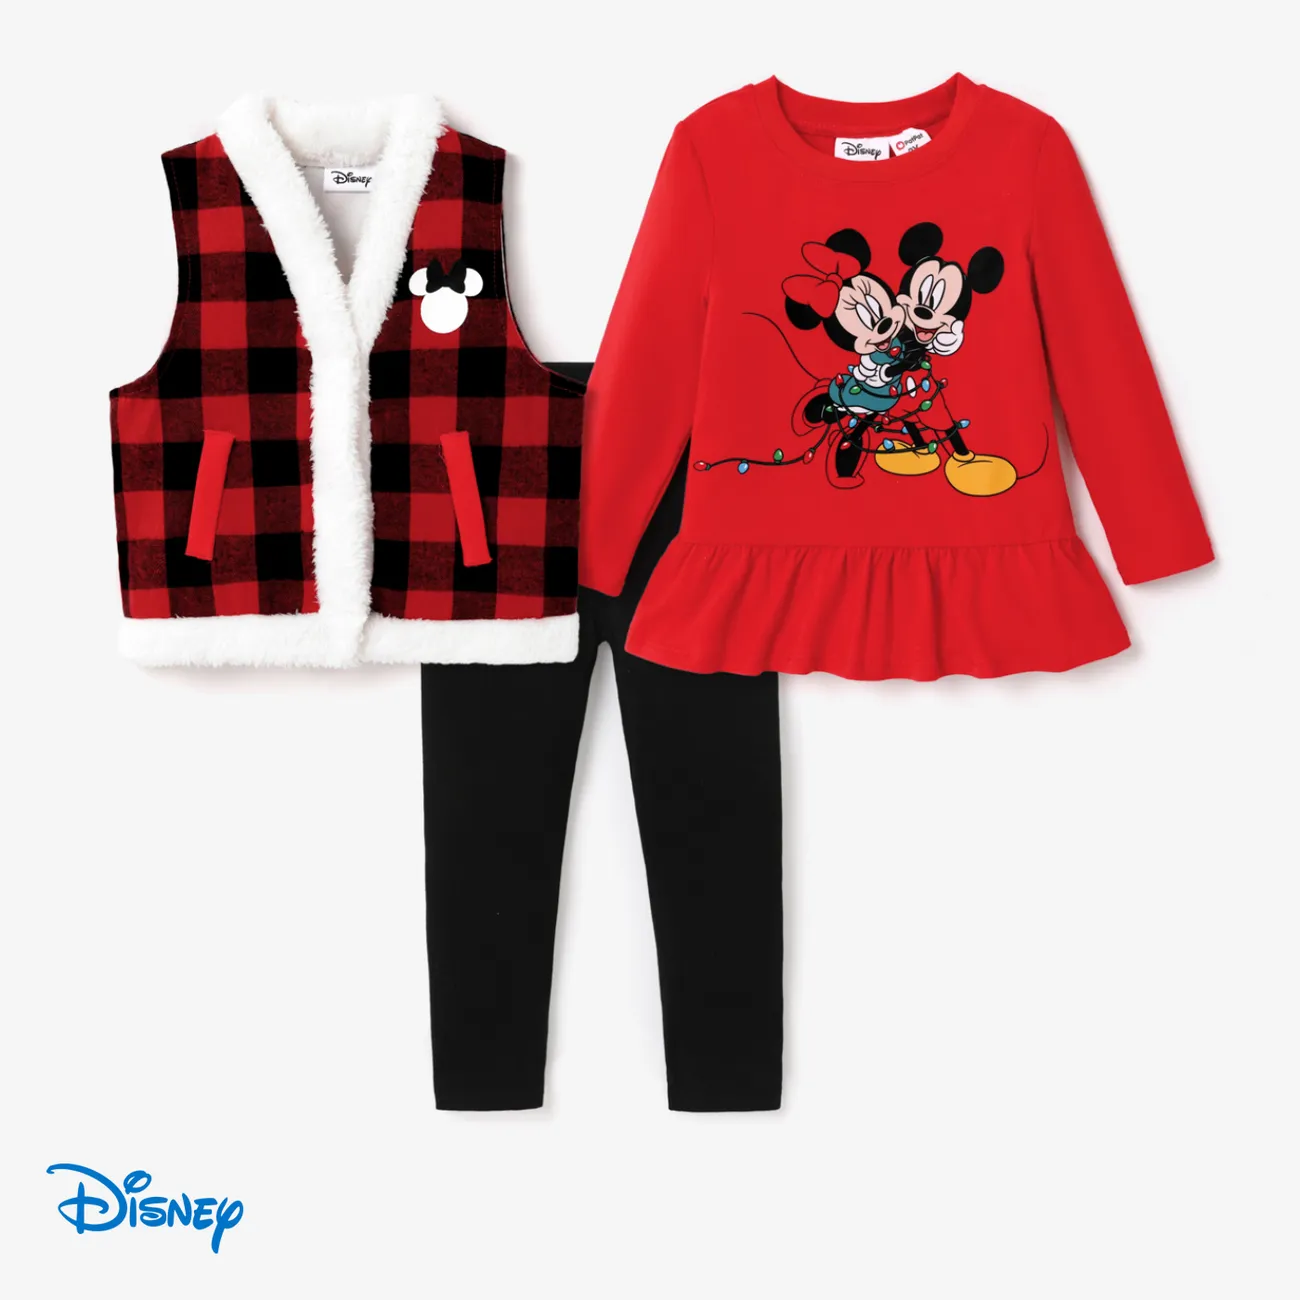 Disney Mickey and Friends Enfant en bas âge Fille Couture de tissus Enfantin ensembles de vestes Noir big image 1